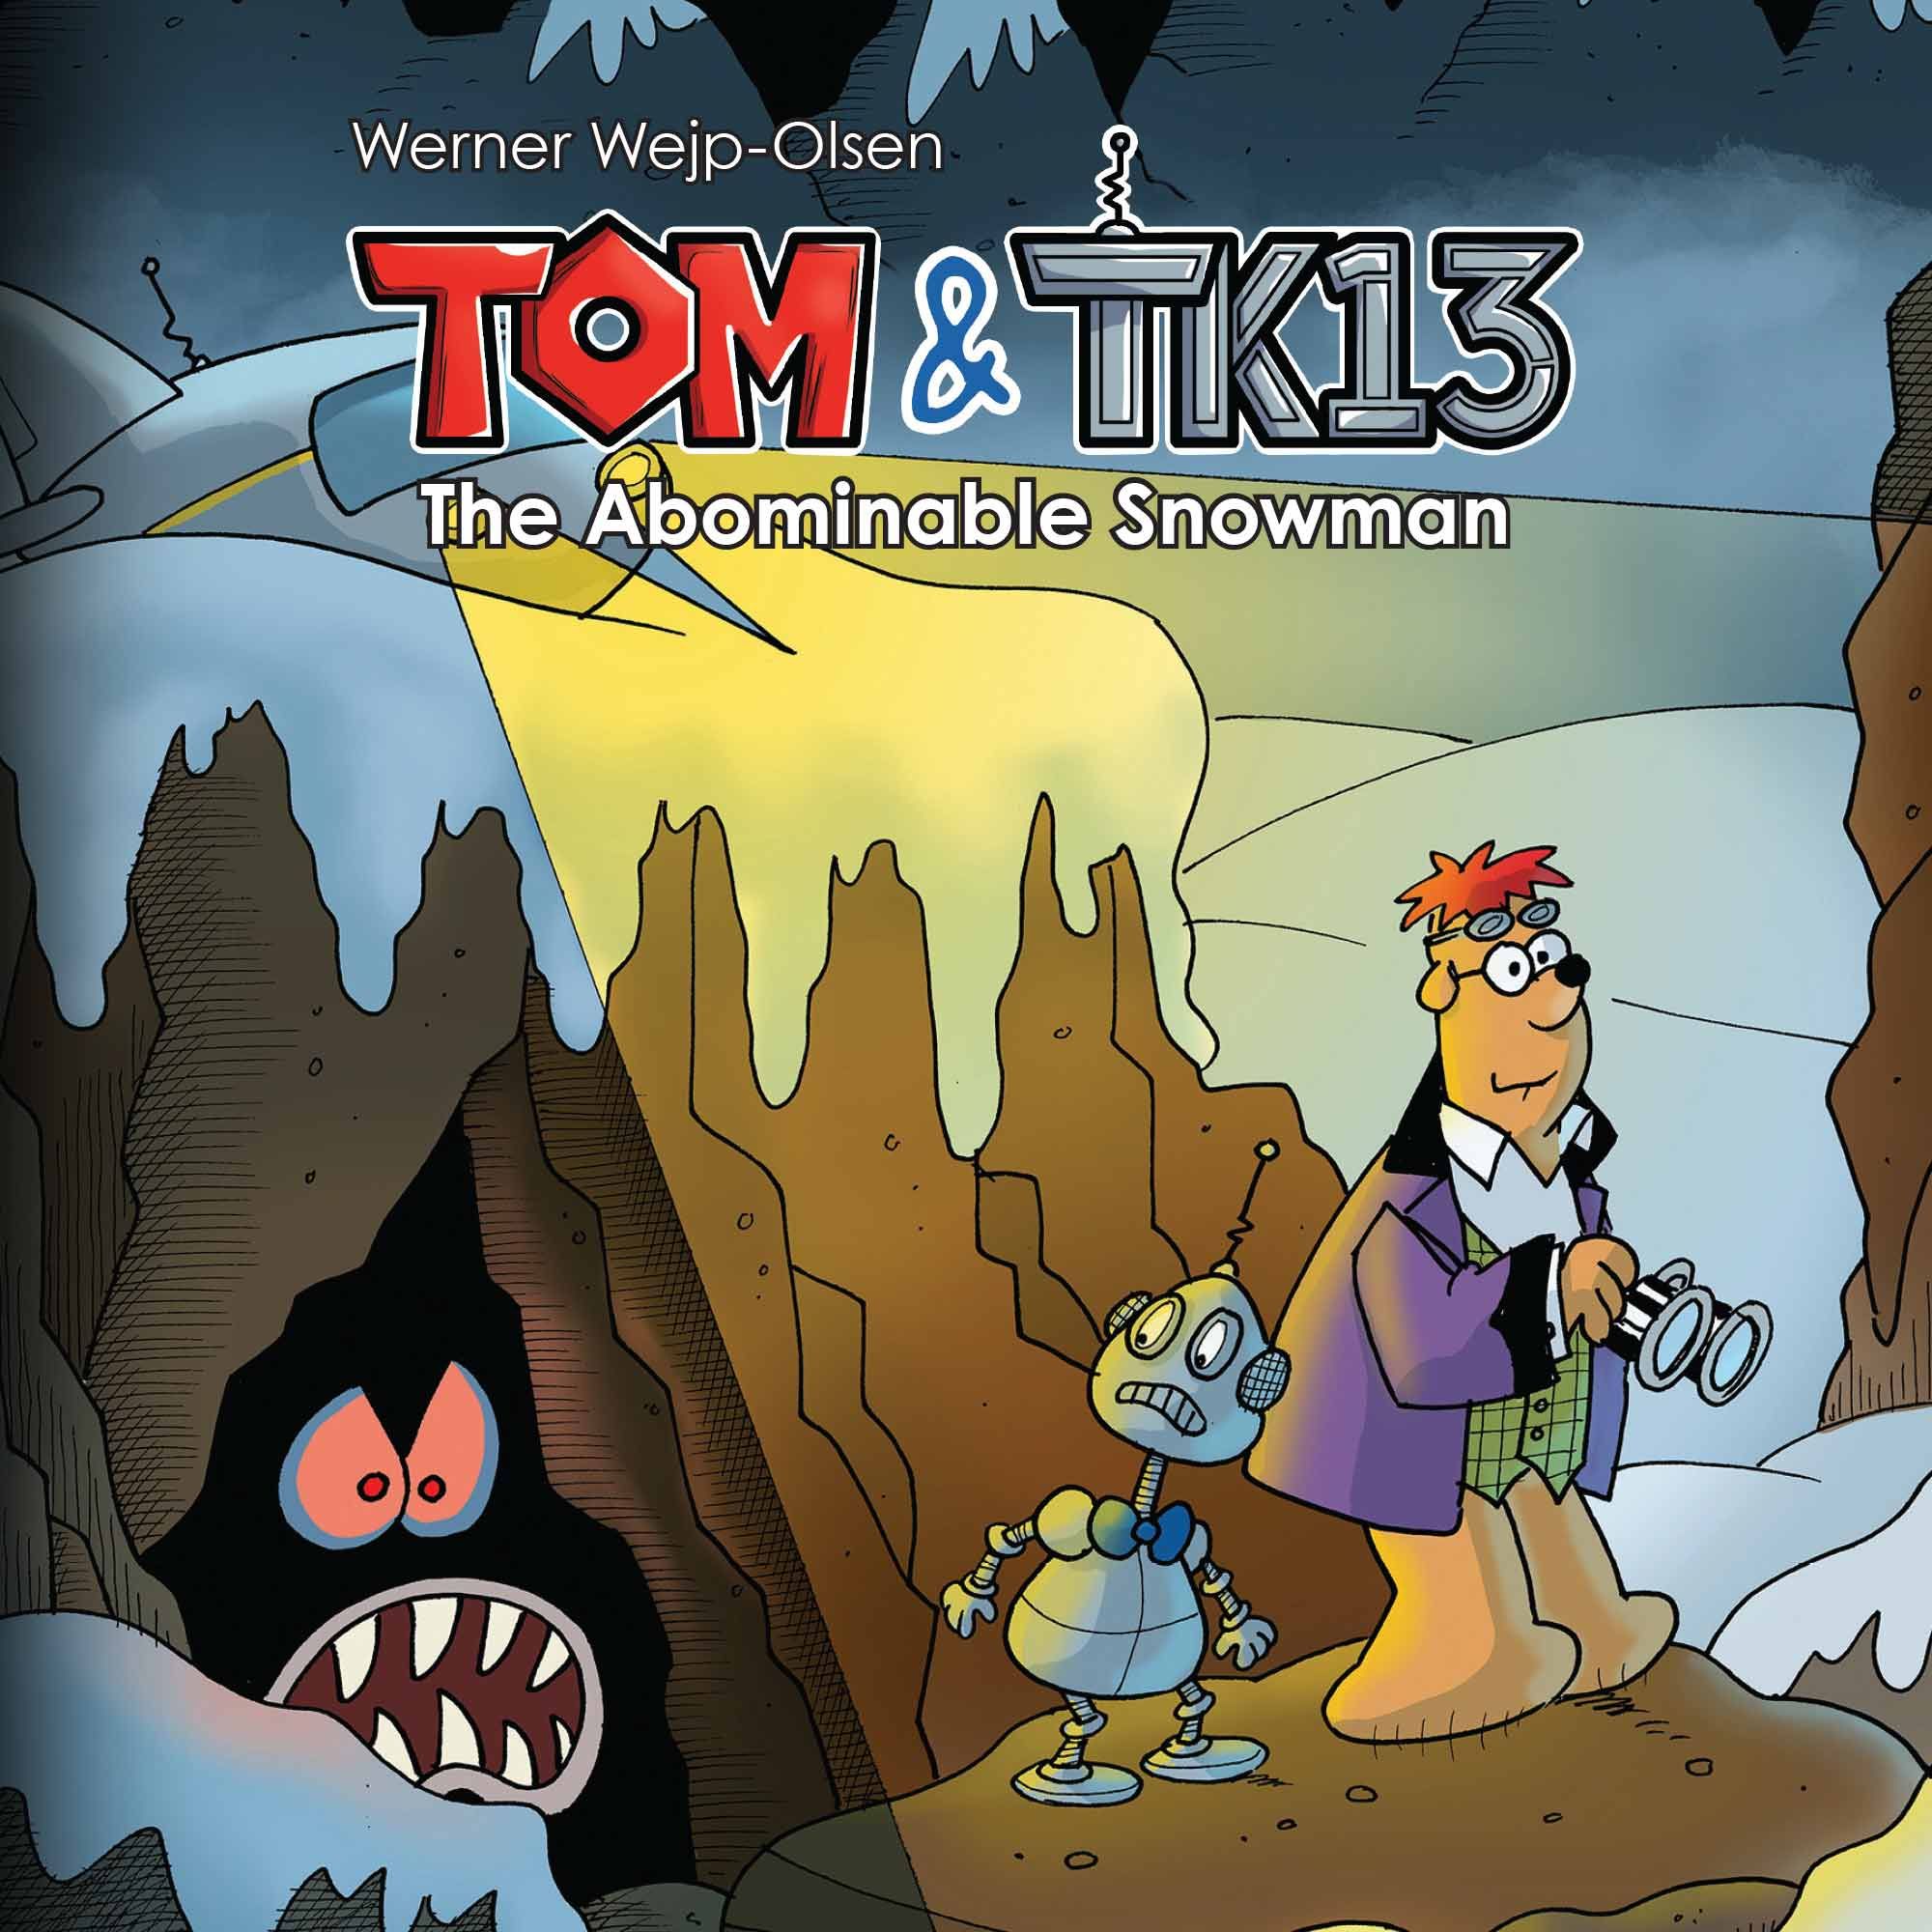 Tom & TK13 #3: The Abominable Snowman, audiobook by Werner Wjep-Olsen